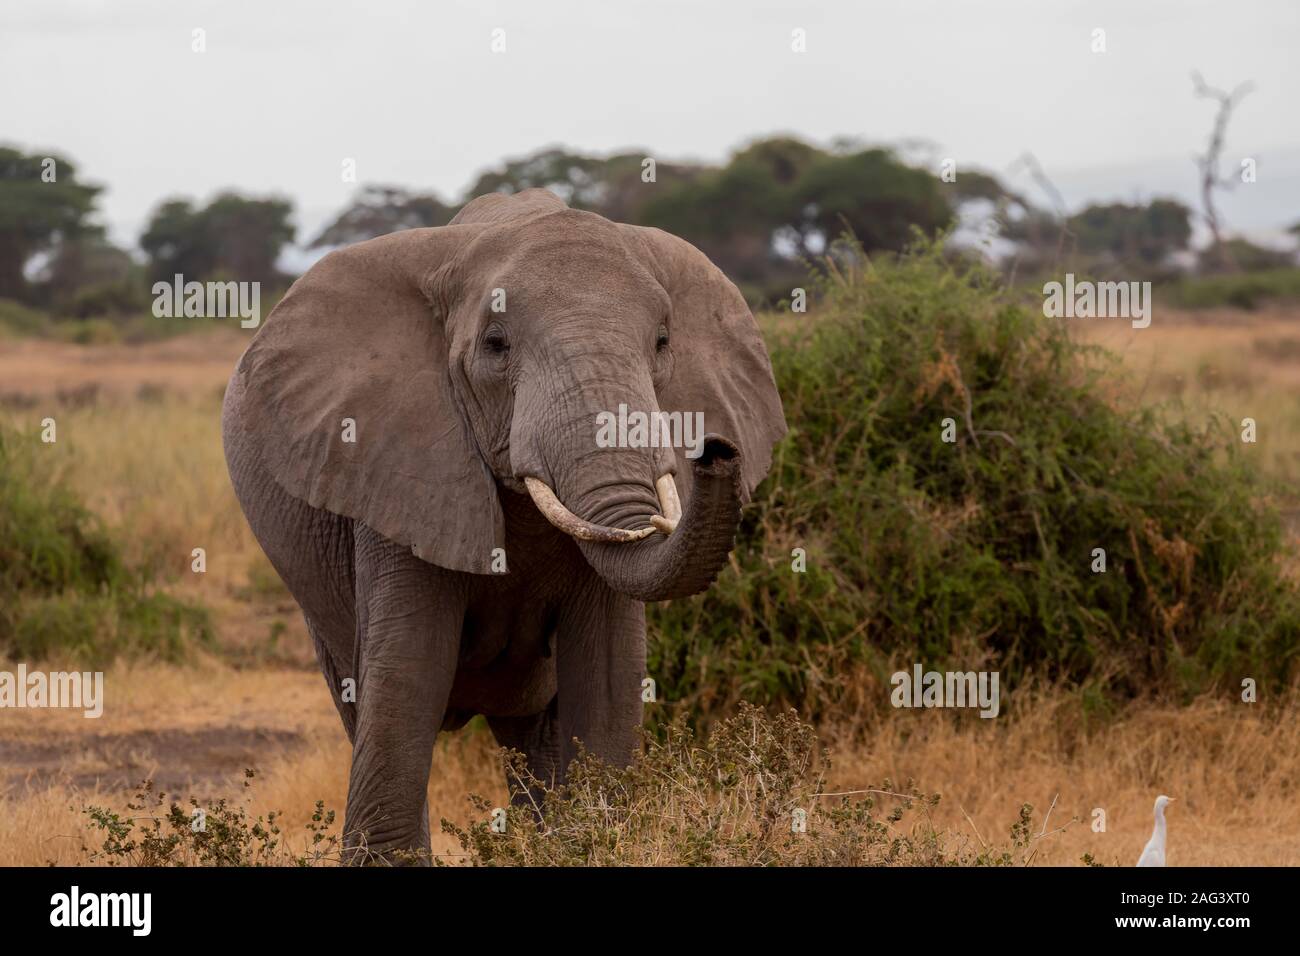 Elefante africano (Loxodonta africana), olfatear el aire con su tronco en el Parque Nacional Amboseli, Kenia Foto de stock